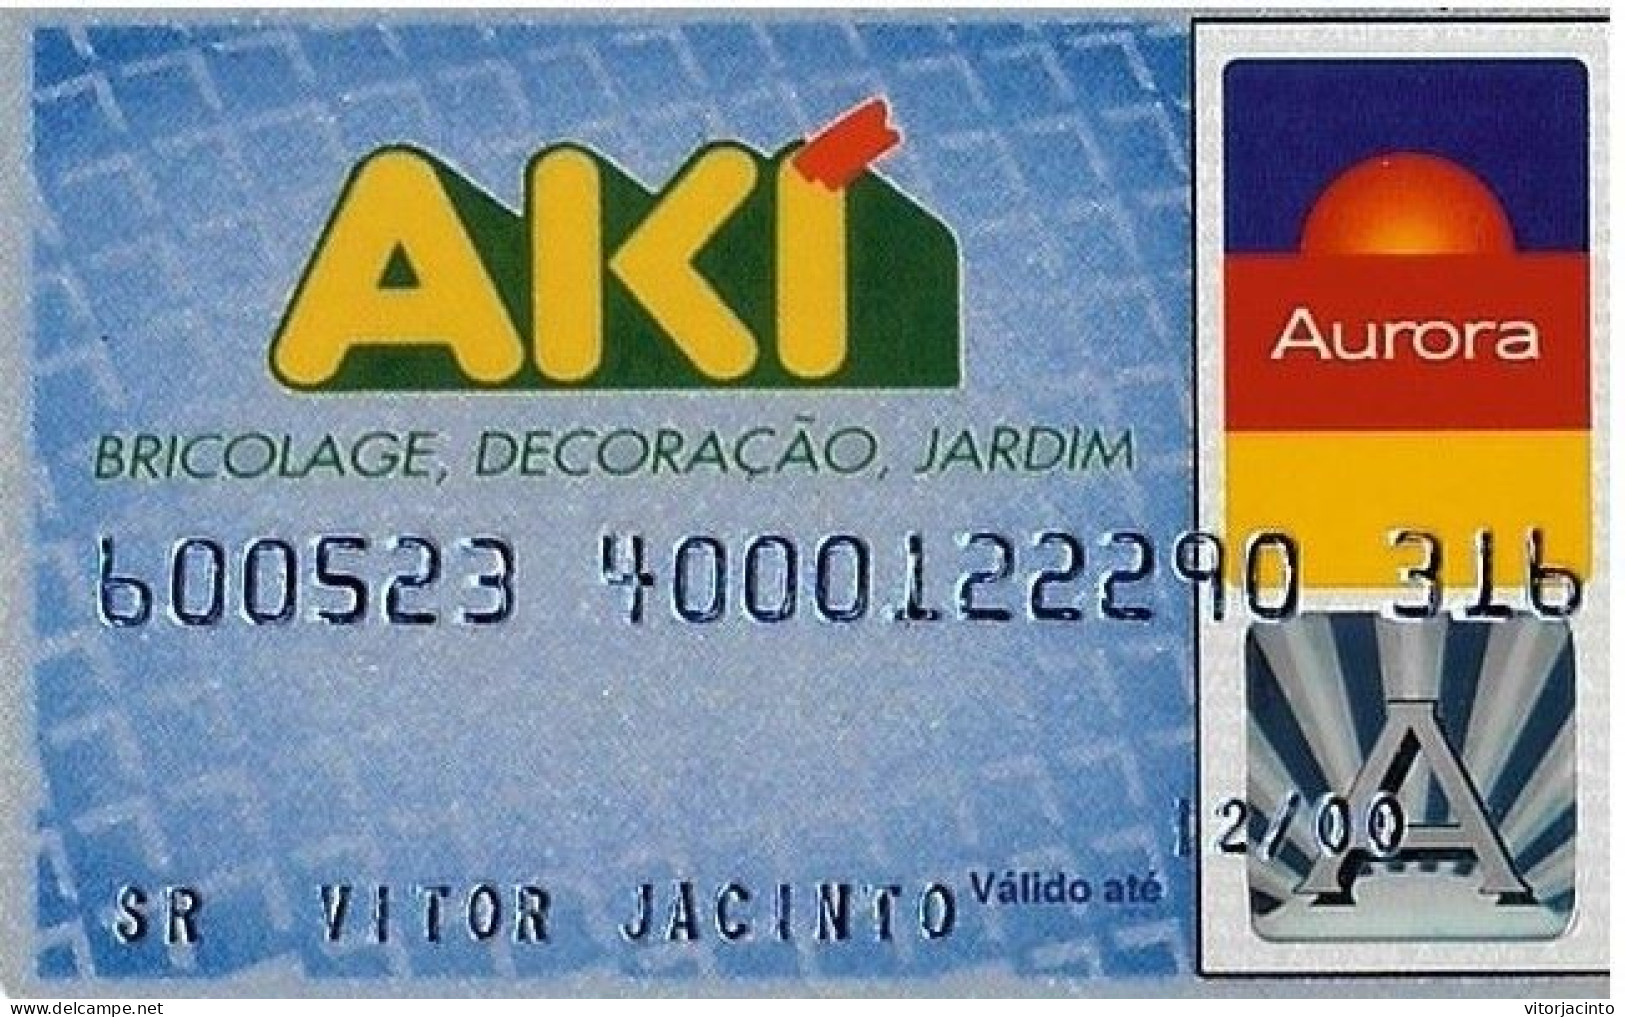 PORTUGAL - AKI - Cetelem - Tarjetas De Crédito (caducidad Min 10 Años)